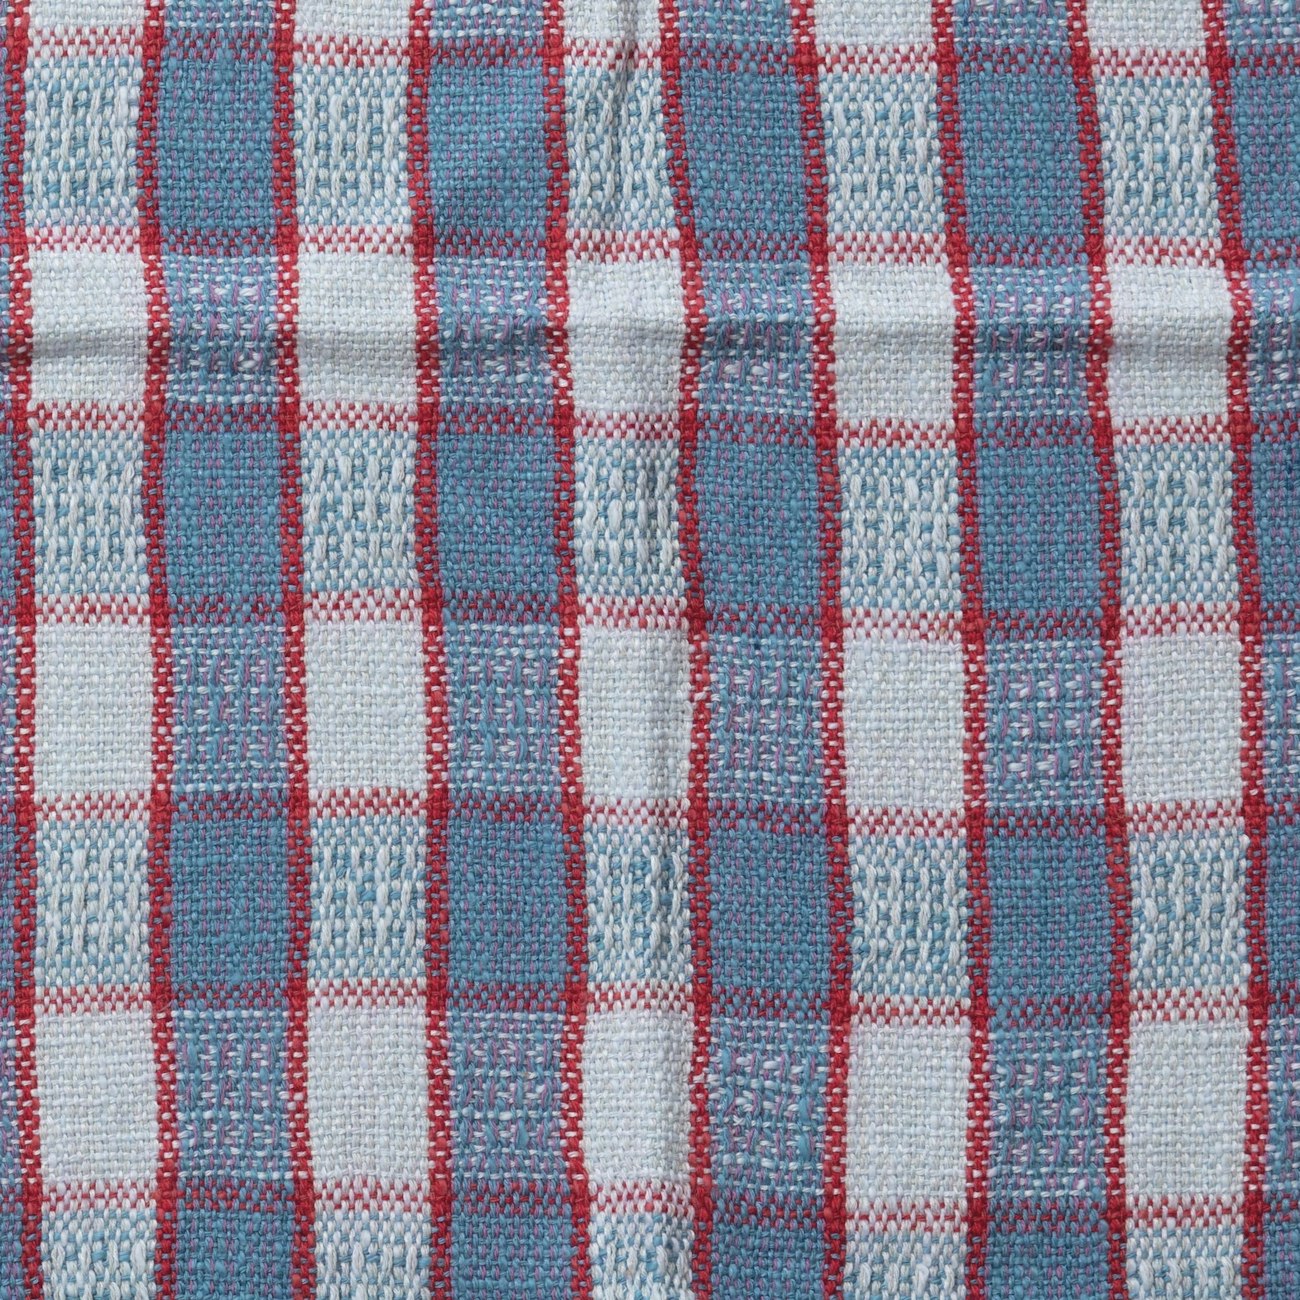 No-Assumptions-Towels-Fabric